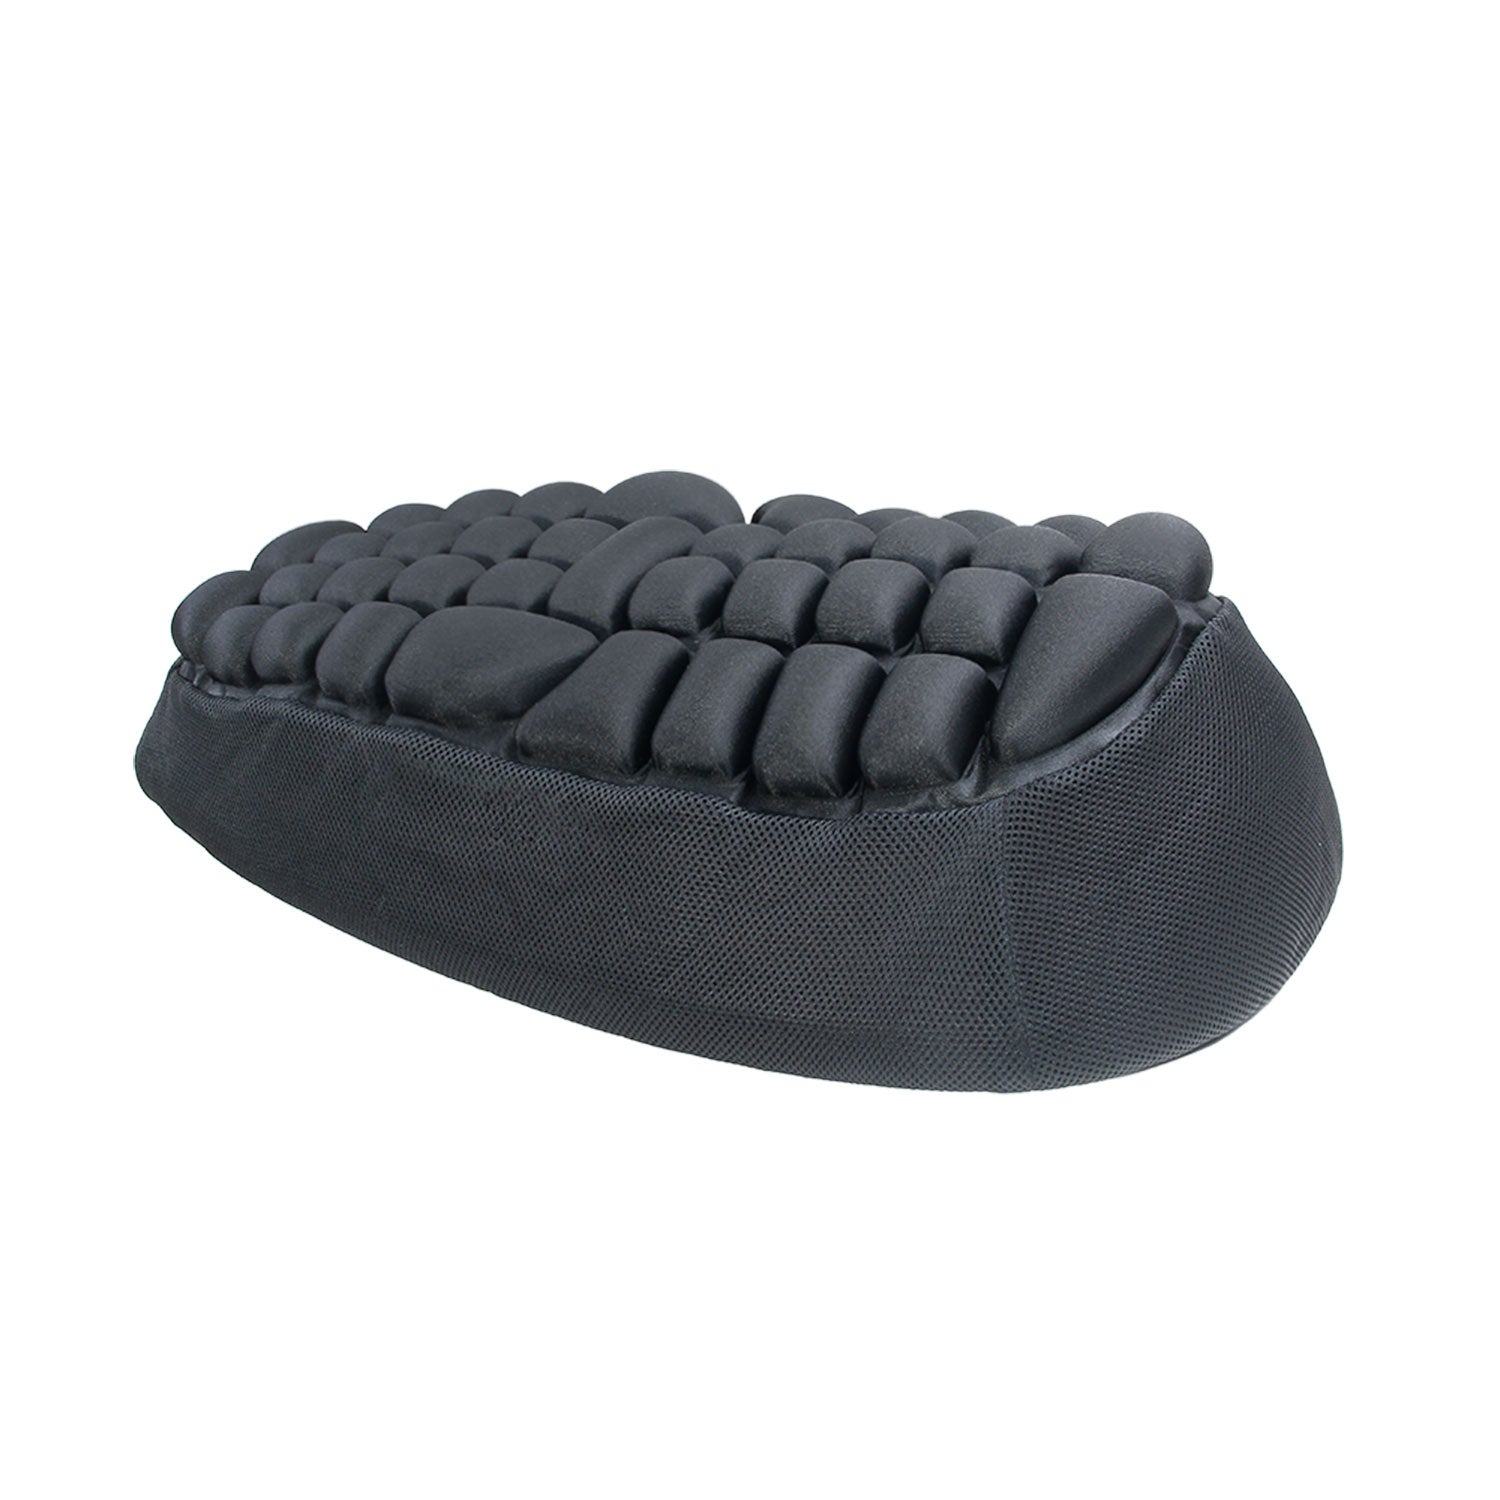 ROHO AirLITE Foam Air Seat Cushion